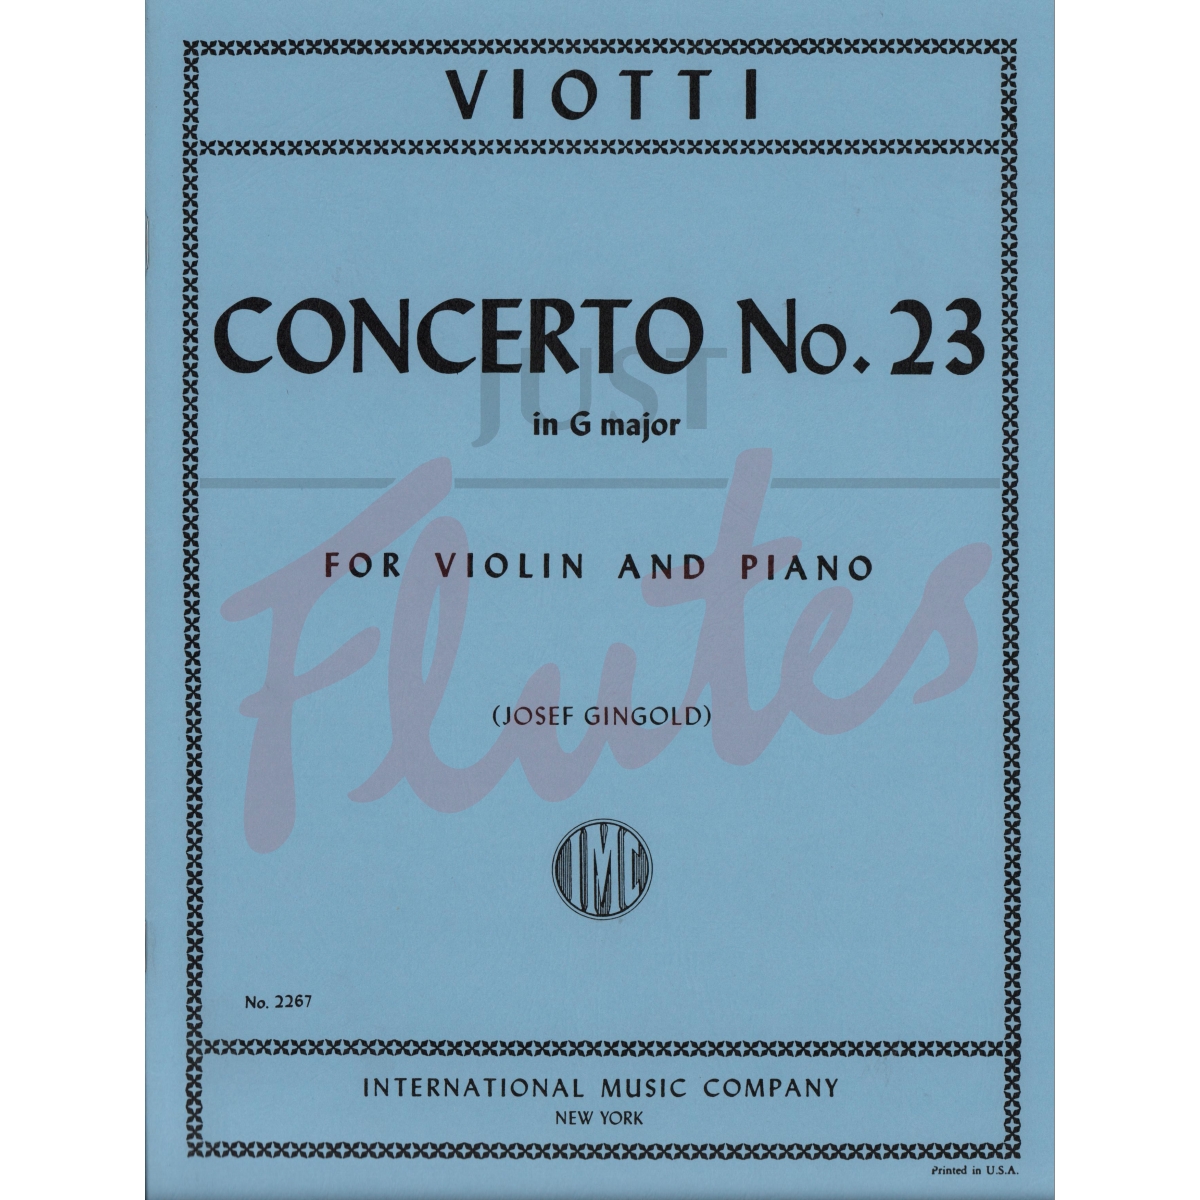 Concerto No.23 in G major